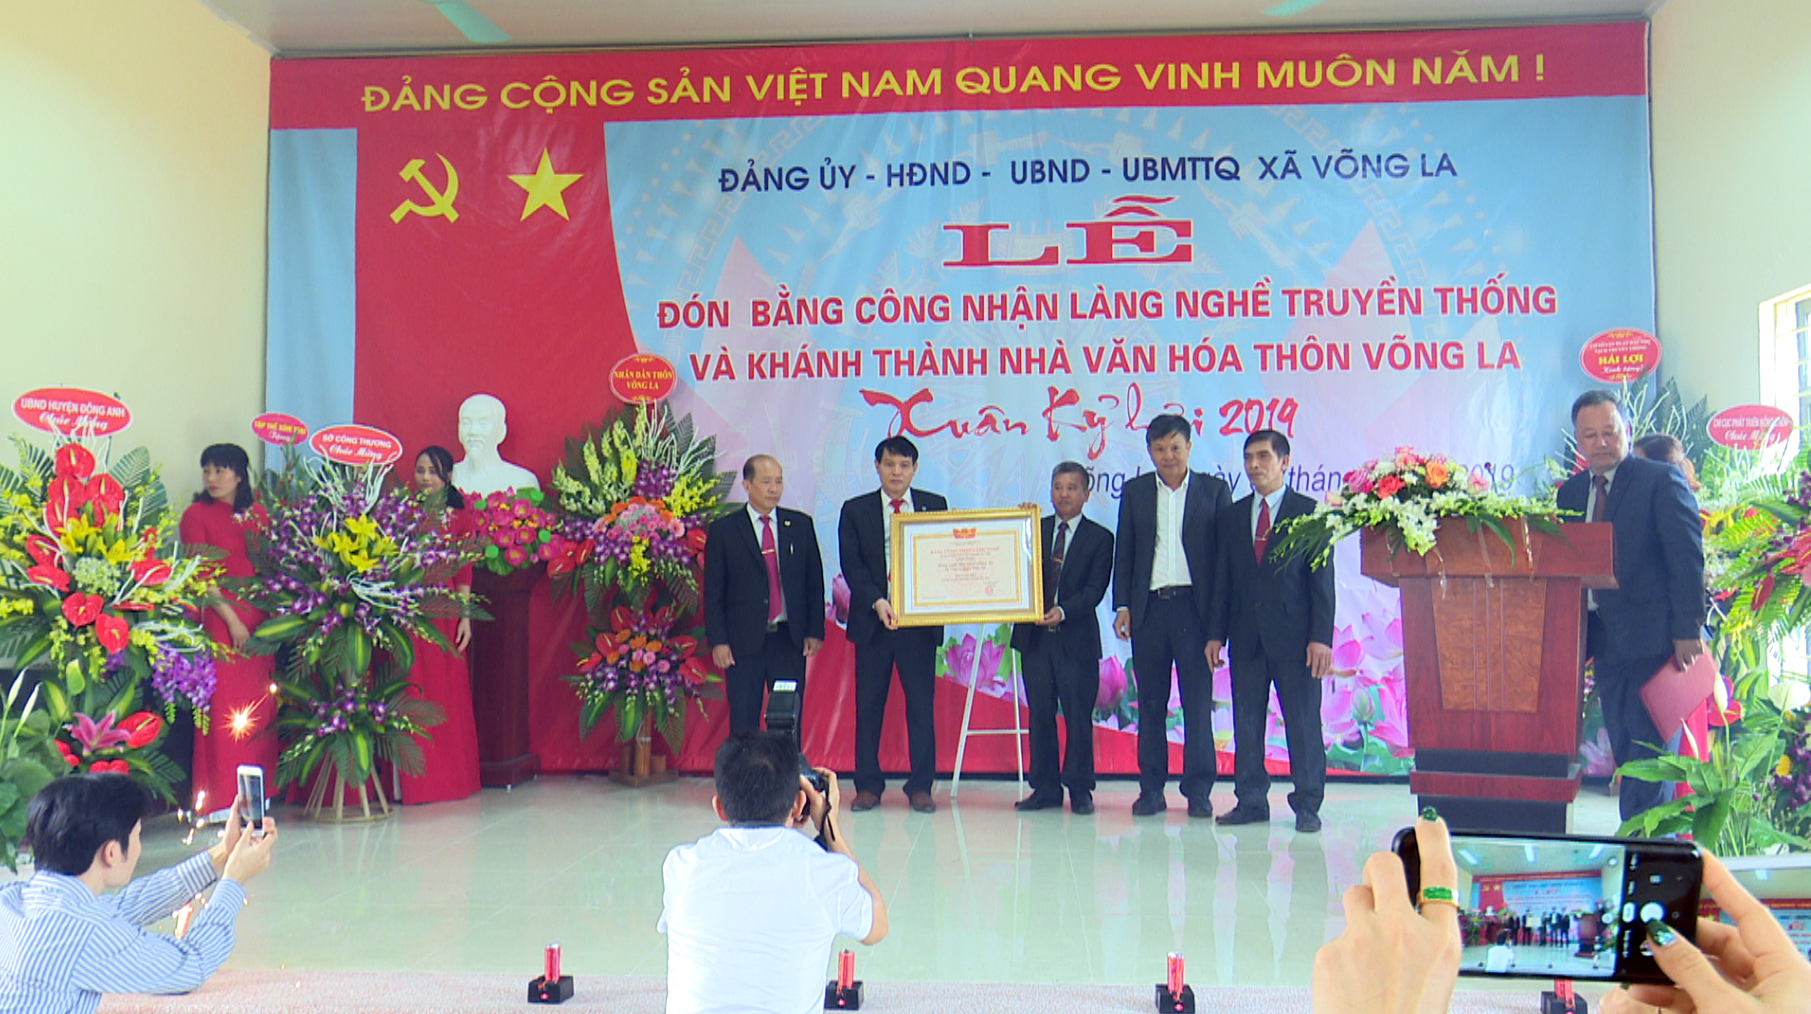 Với giá trị lịch sử được lưu truyền, ngày 5/1/2019, Làng nghề đậu phụ Chài xã Võng La đã được UBND TP. Hà Nội công nhận là Làng nghề truyền thống Hà Nội.